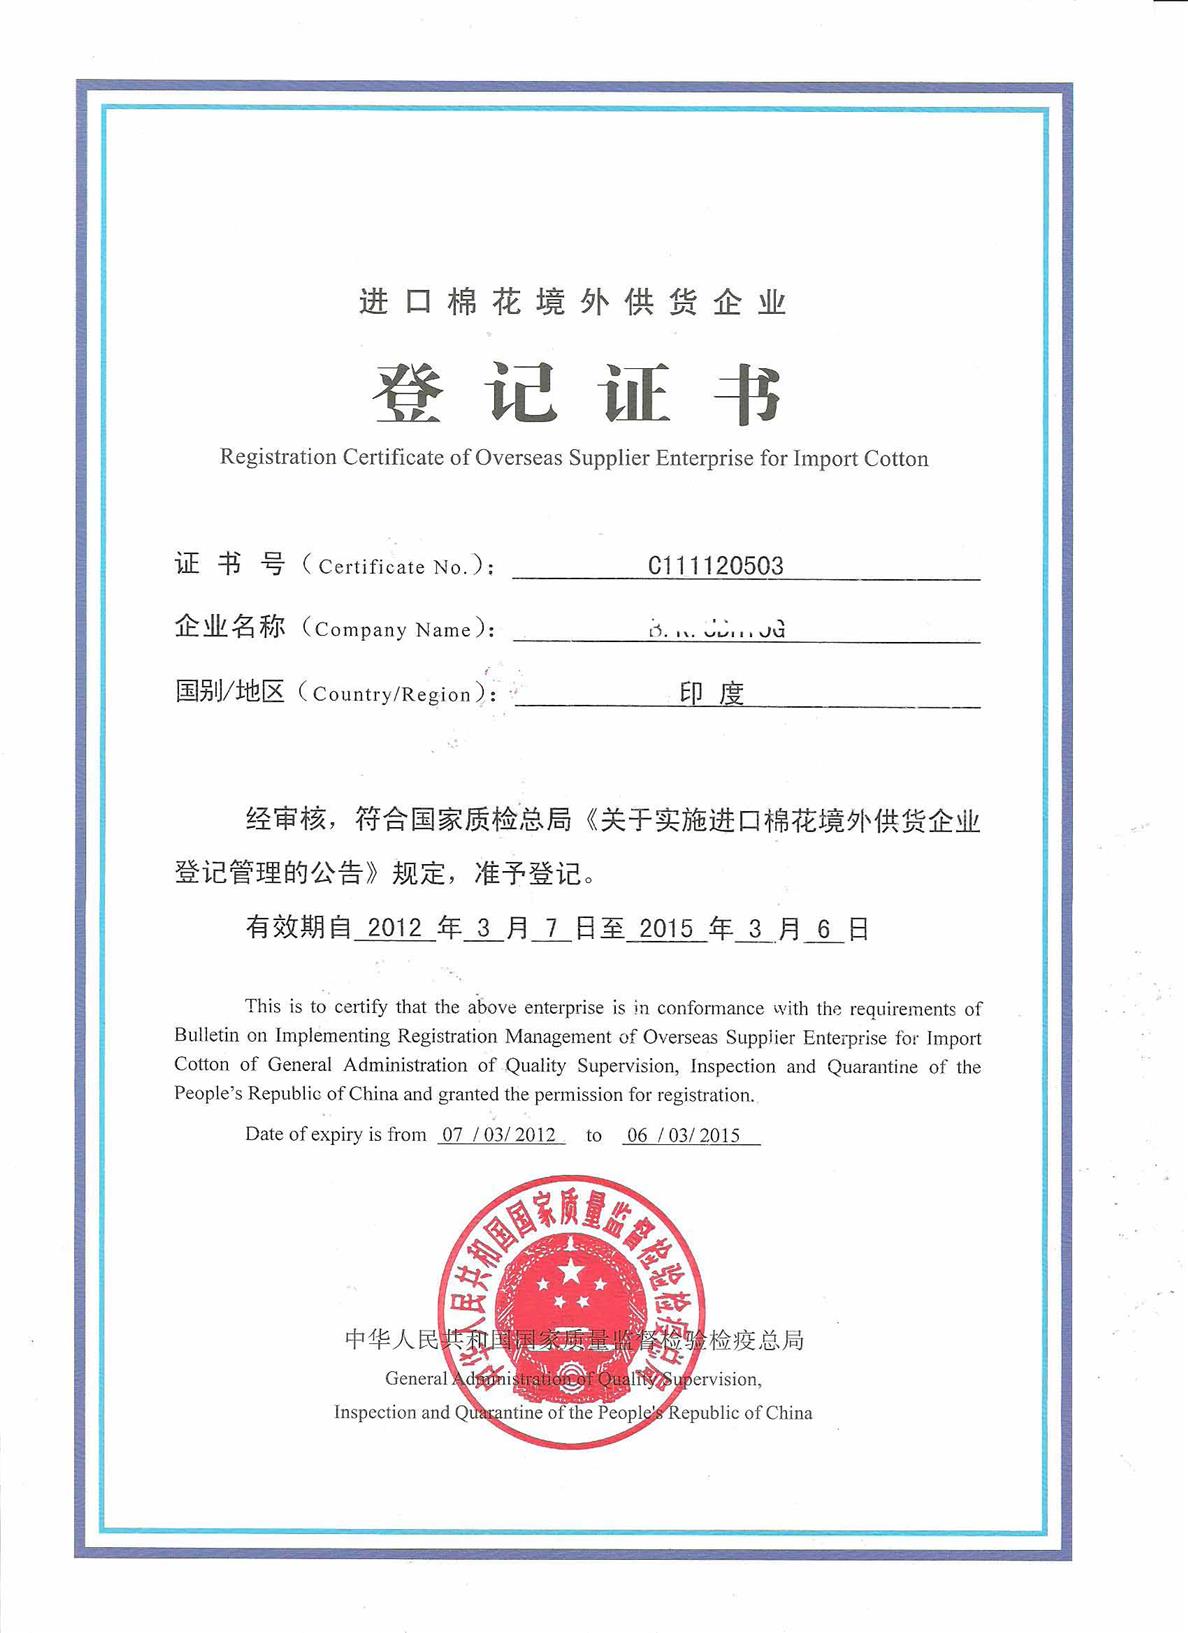 怎么申请 澳大利亚进口棉花国外供货企业登记证书京元 进口棉花AQSIQ证书